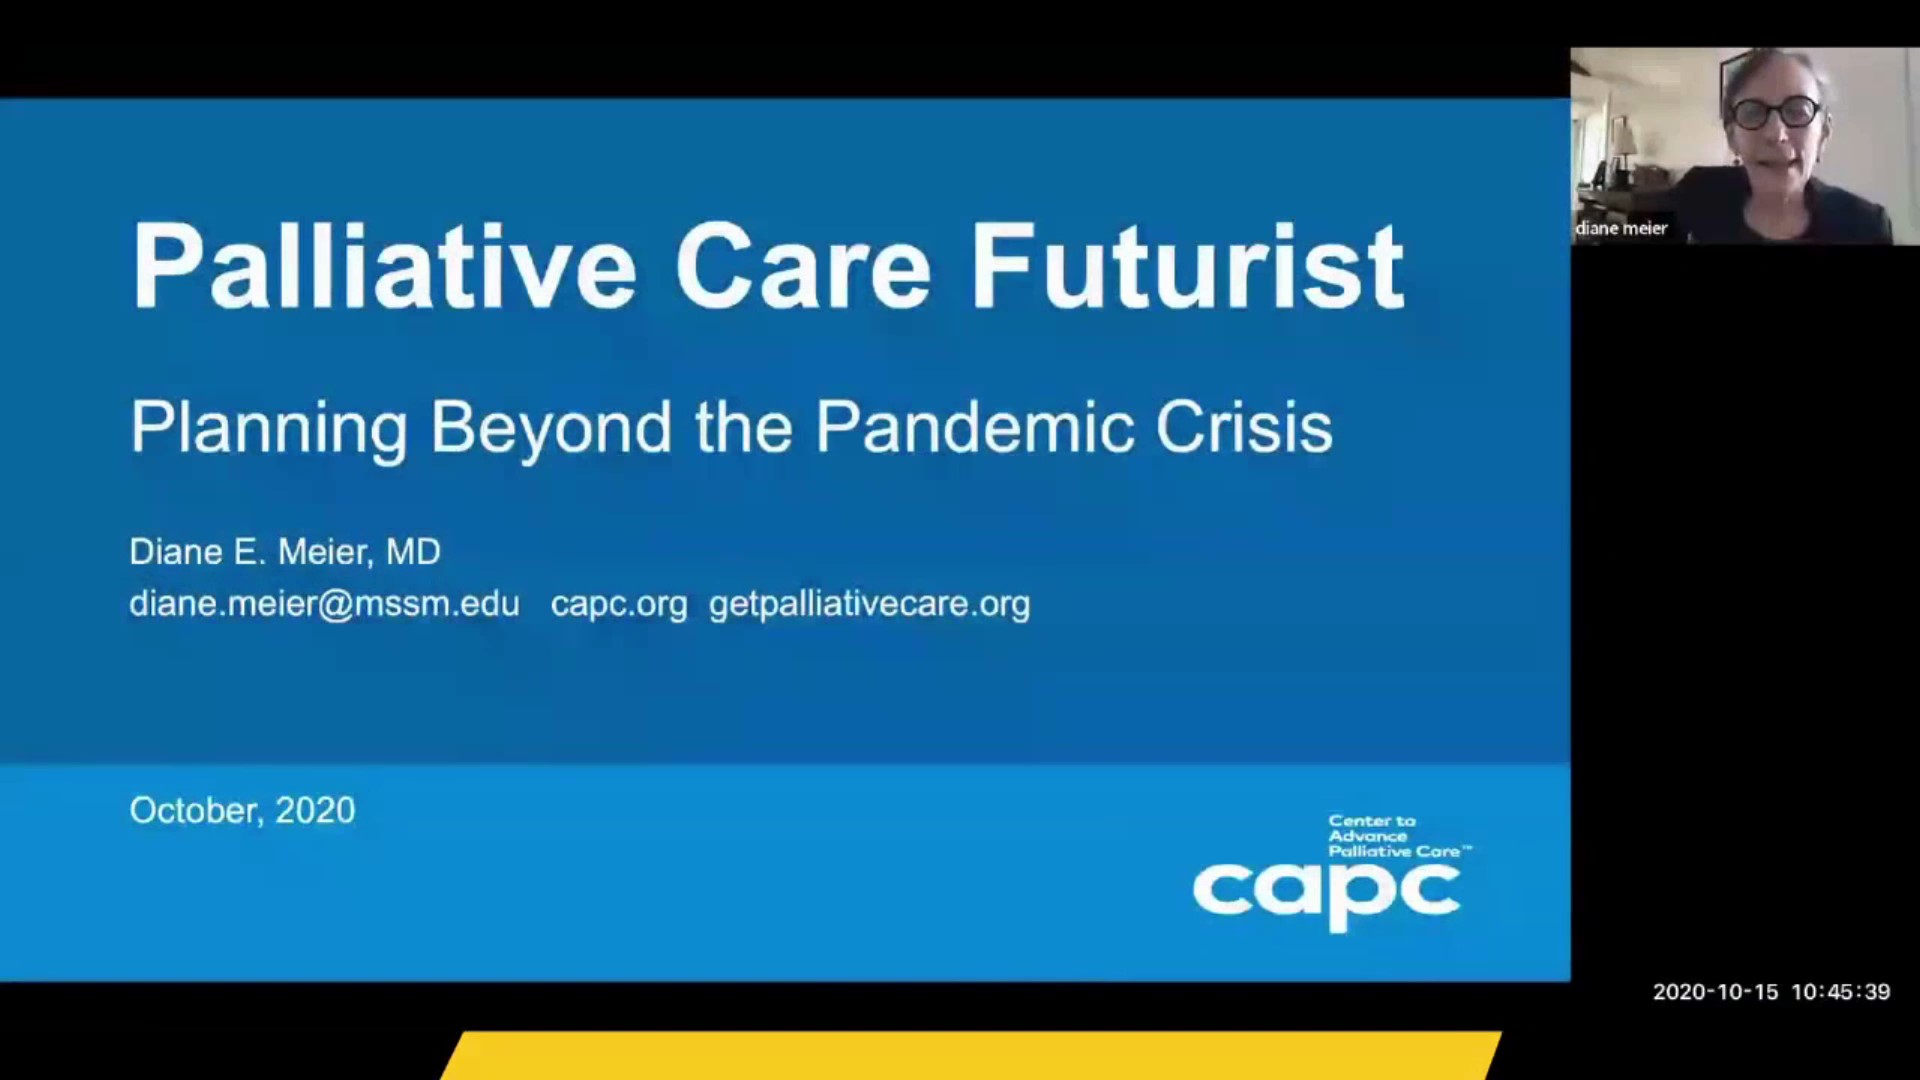 O futuro dos Cuidados Paliativos pós COVID-19